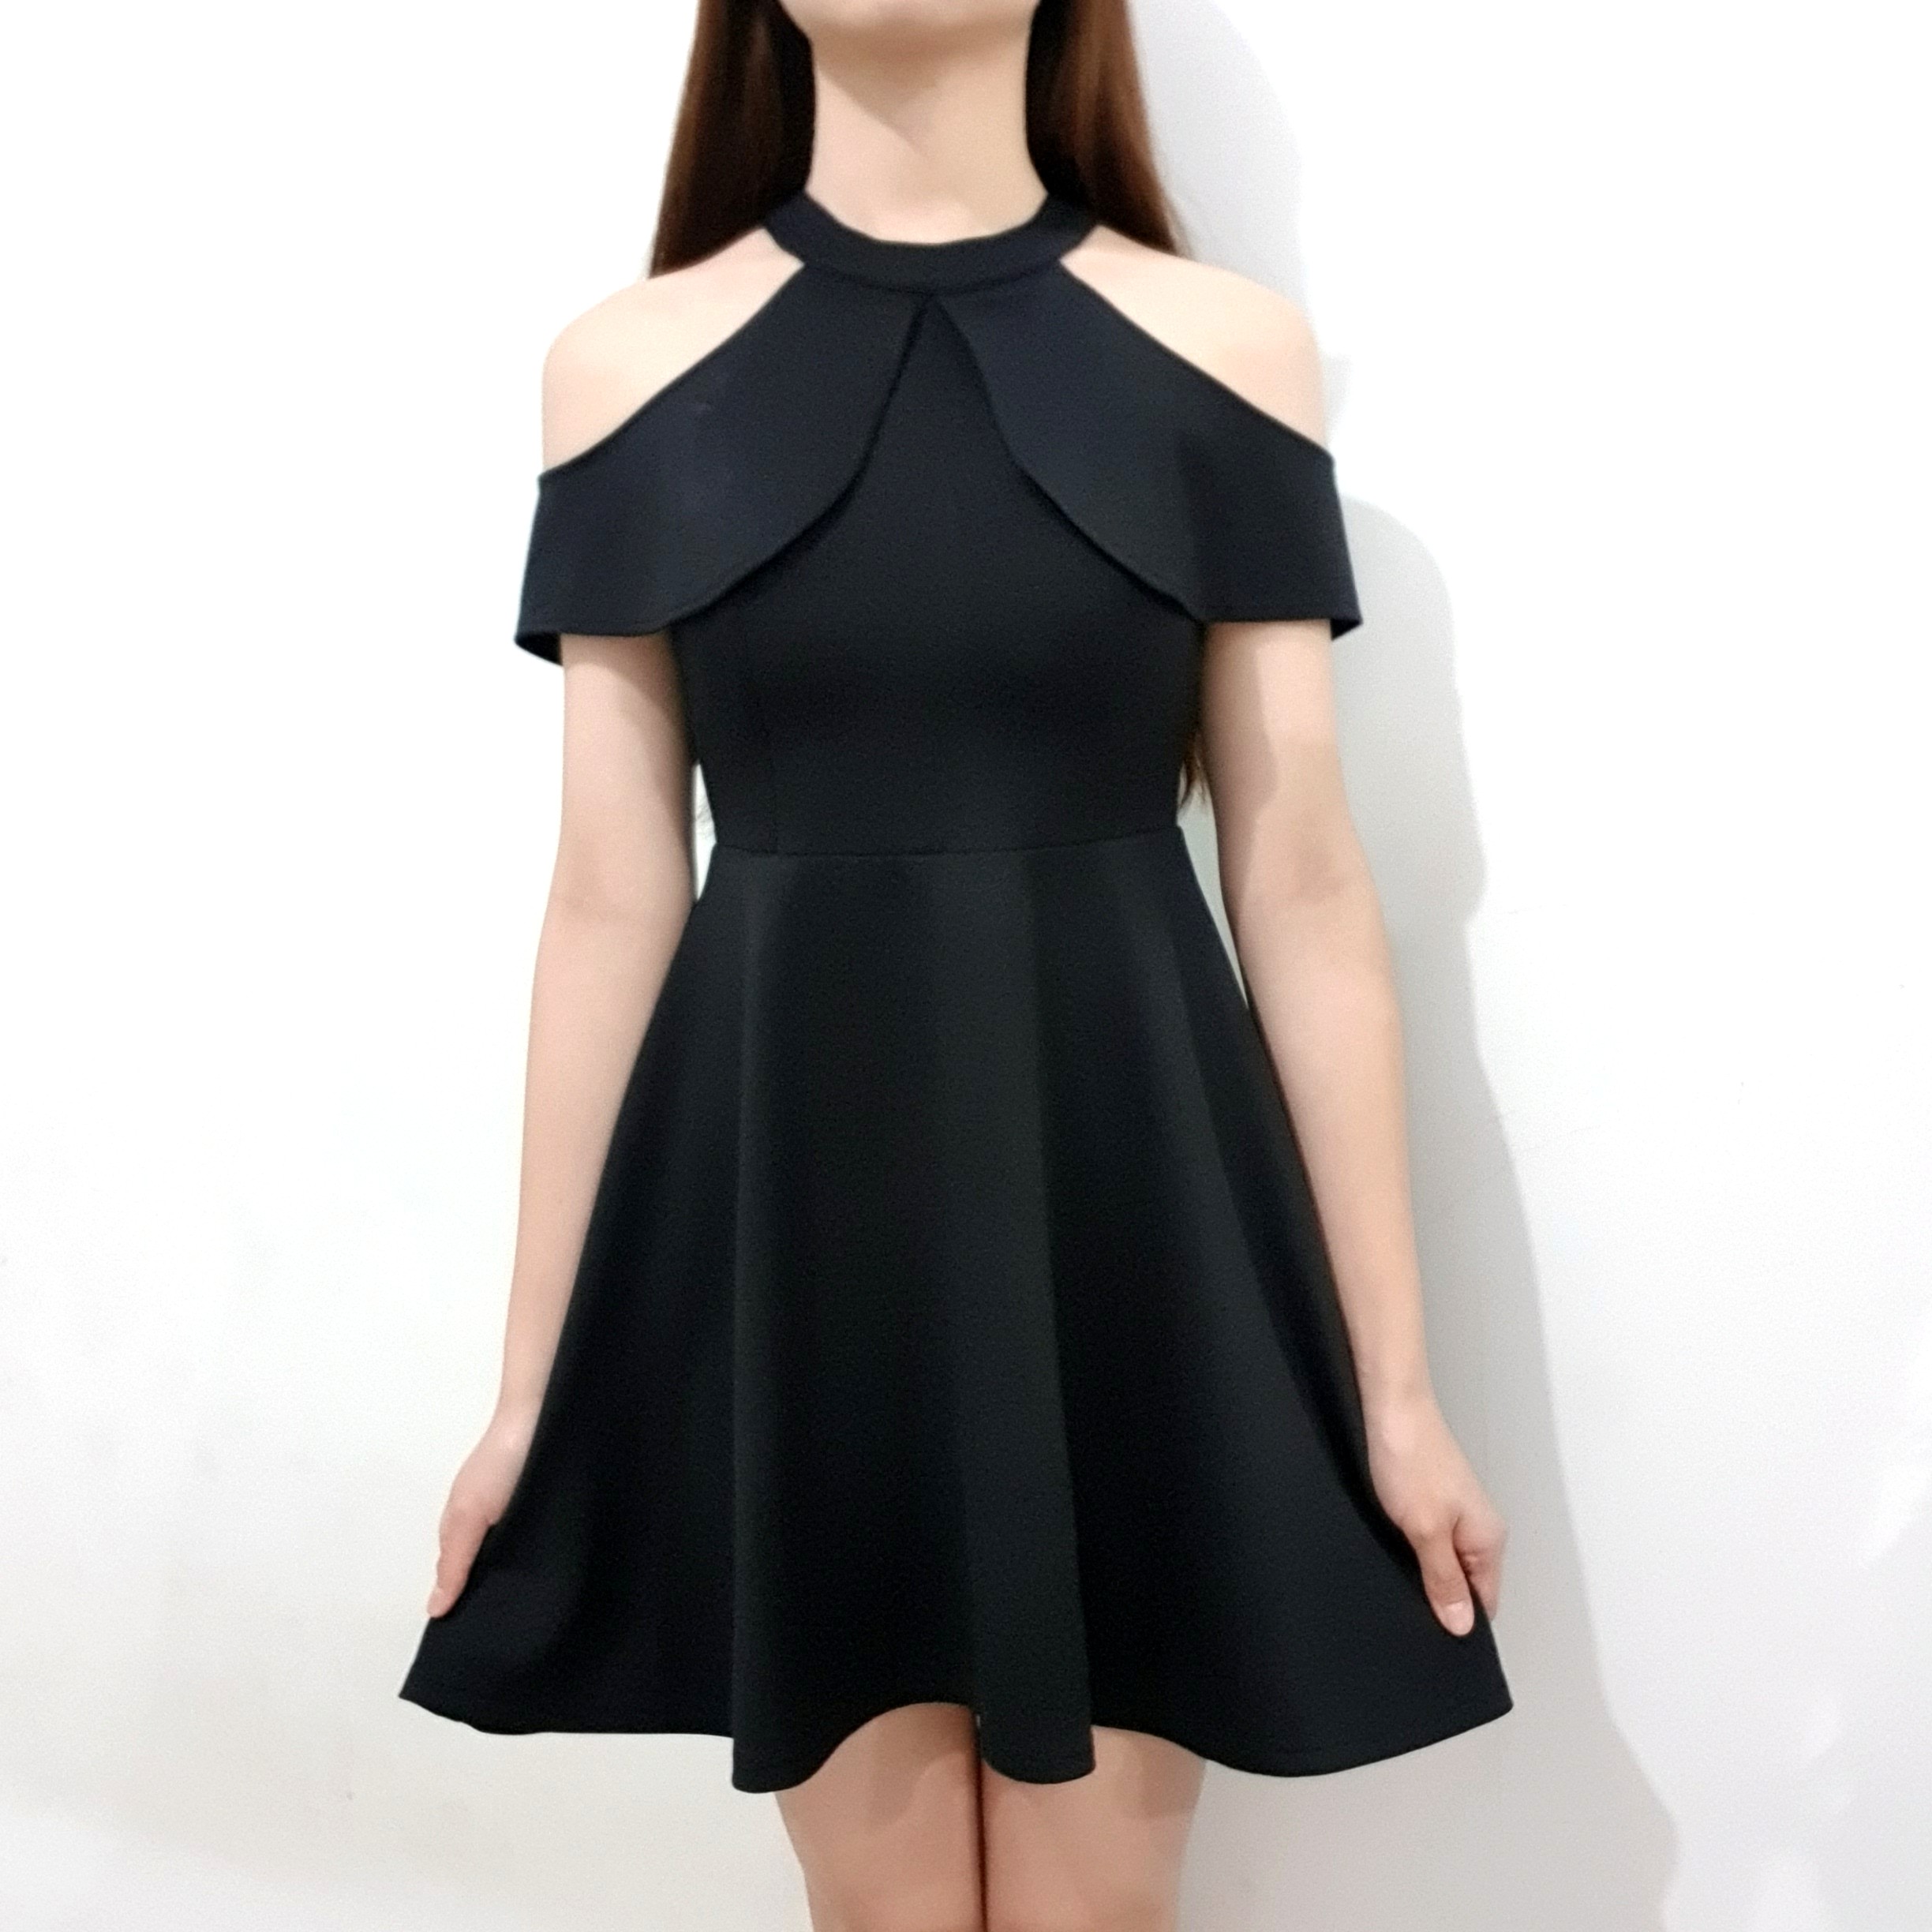 Sabrina Black Dress Hitam Scuba Korea Mini Dress Pesta Casual Fesyen Wanita Pakaian Wanita